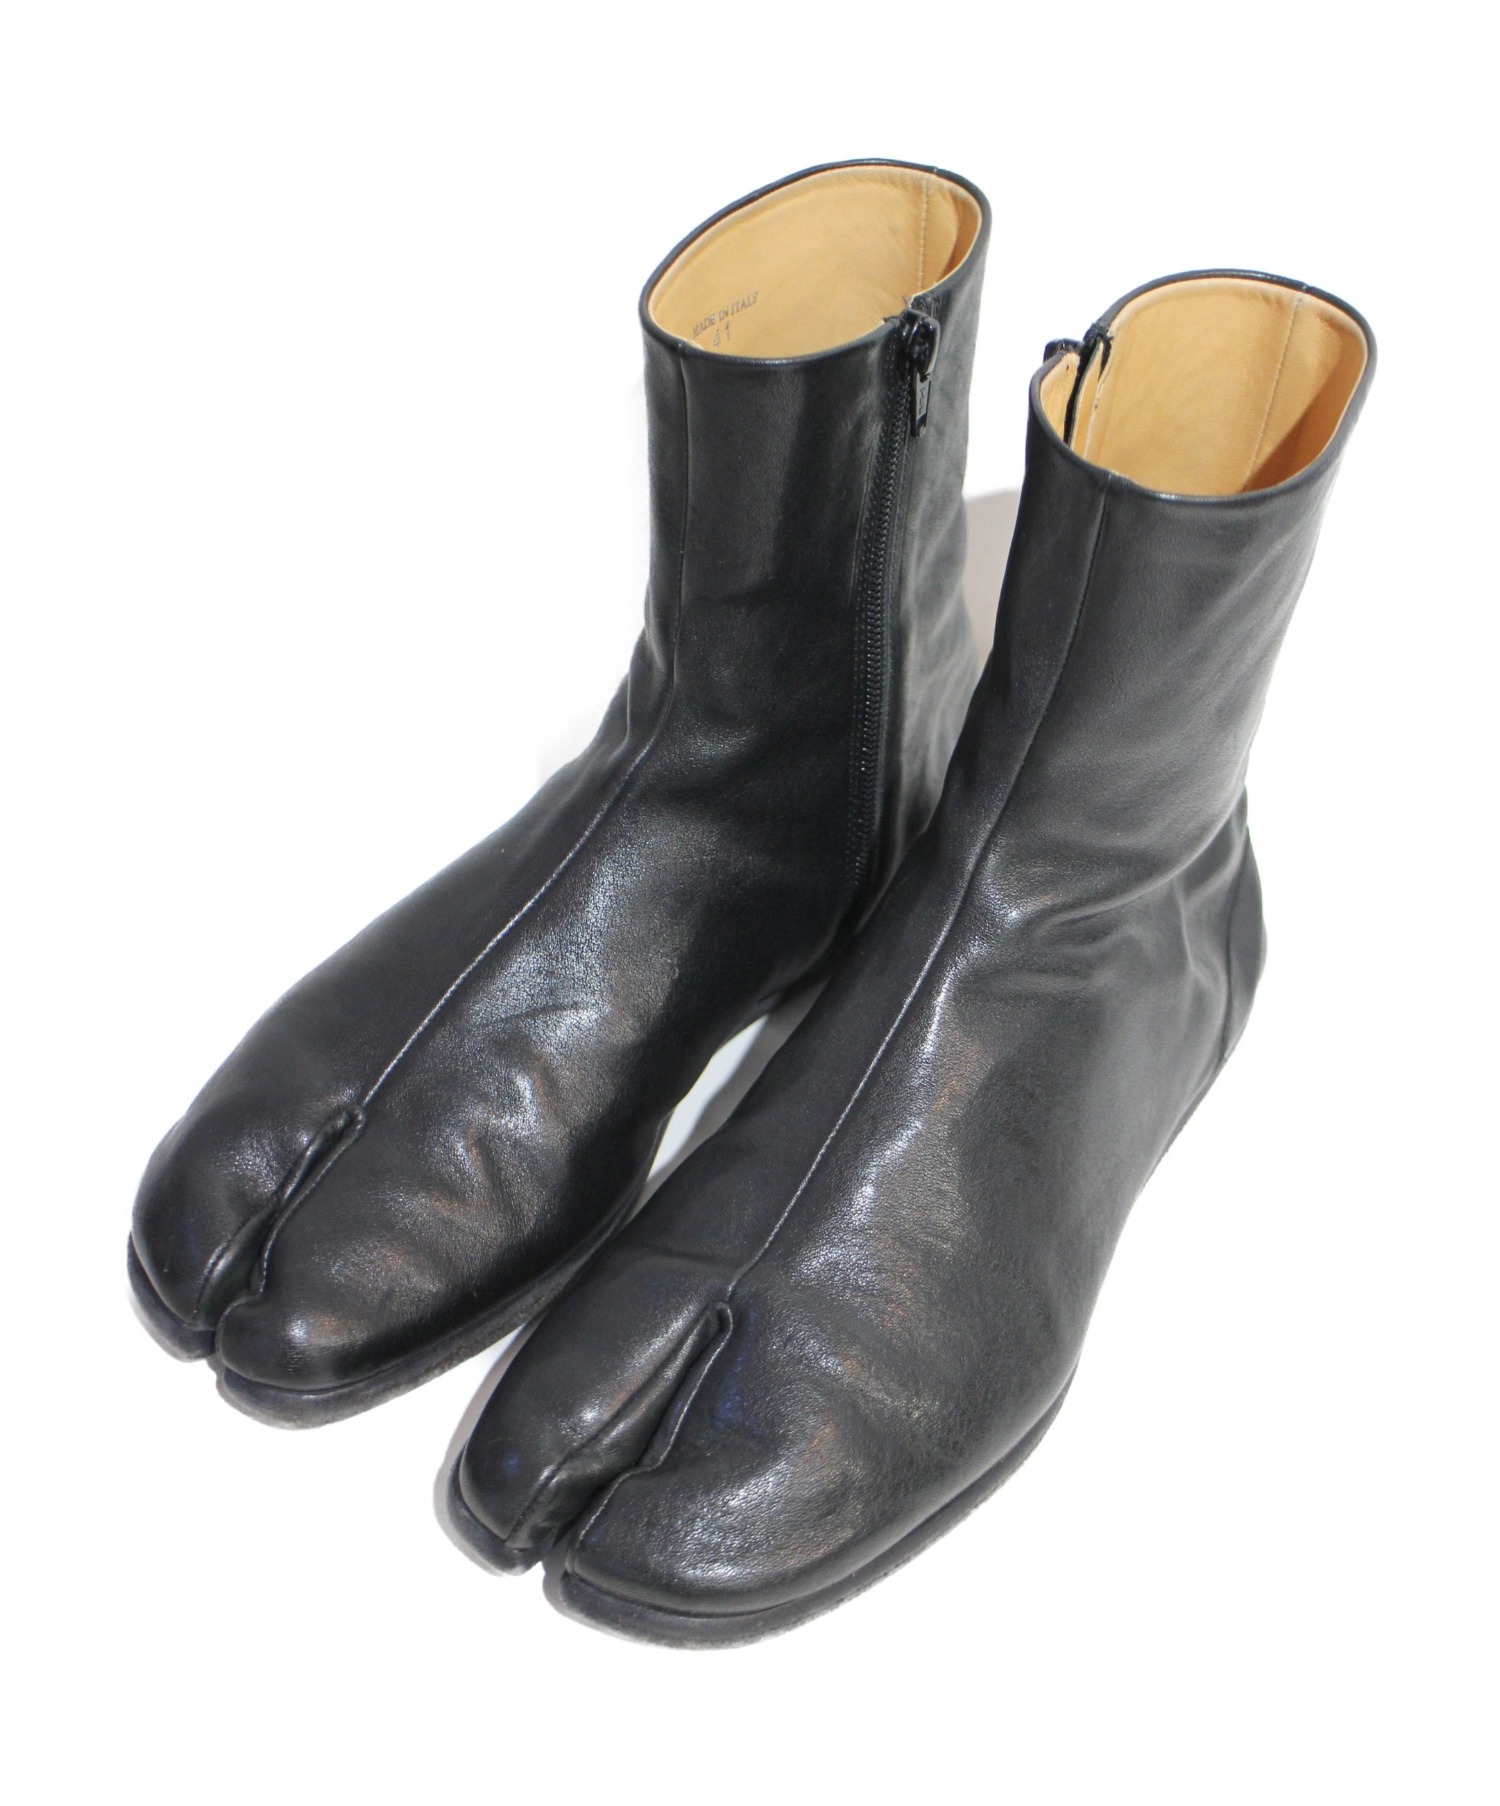 【のシューズ】 Maison Martin Margiela - Margiela Tabi boots マルジェラ 足袋ブーツの通販 by